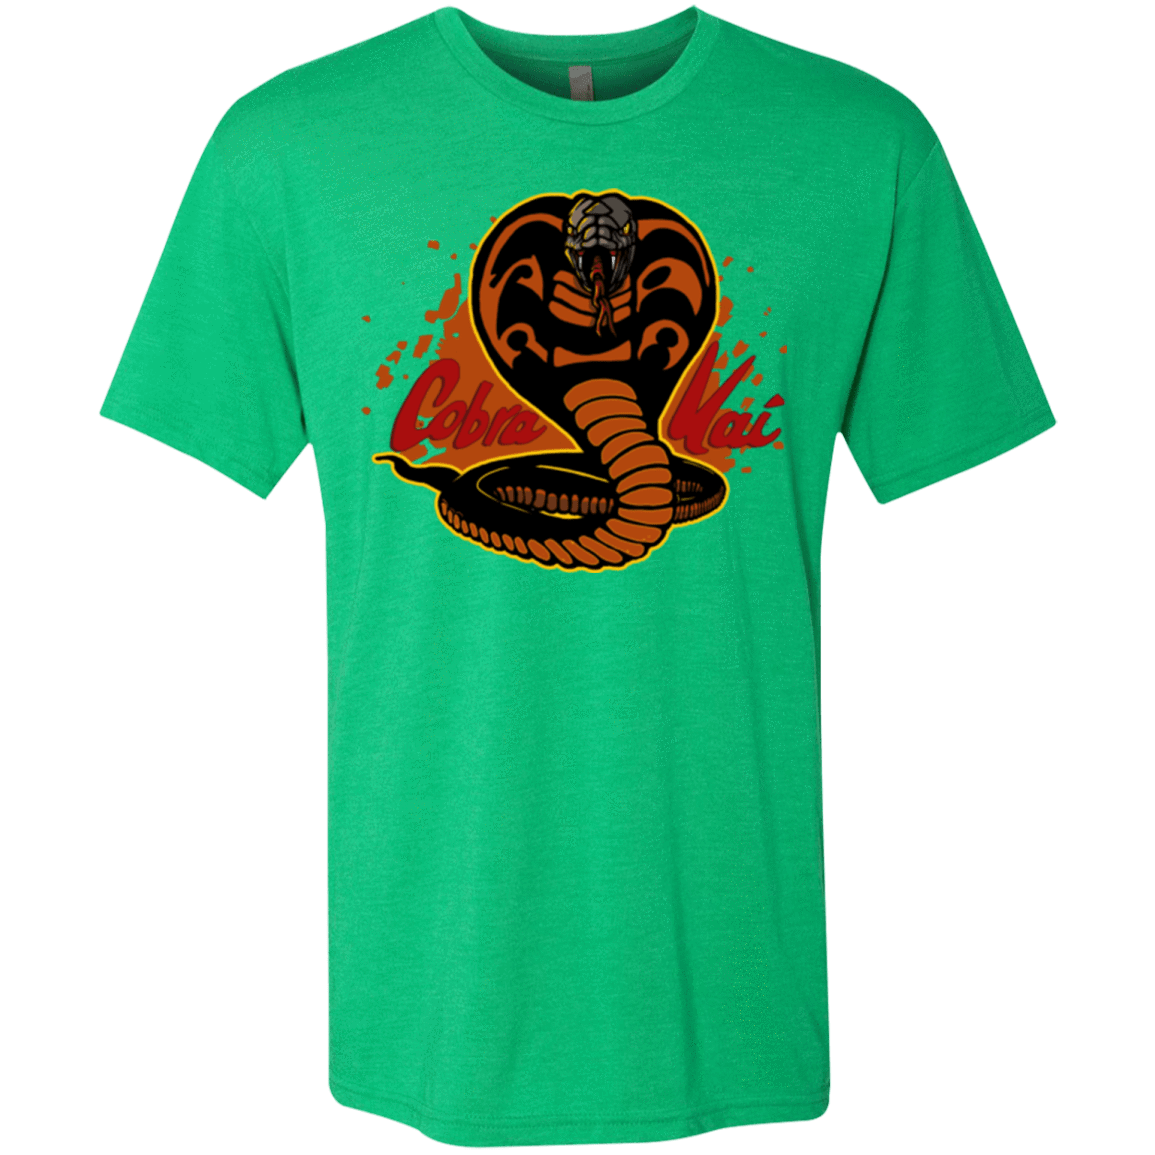 T-Shirts Envy / S Familiar Reptile Men's Triblend T-Shirt